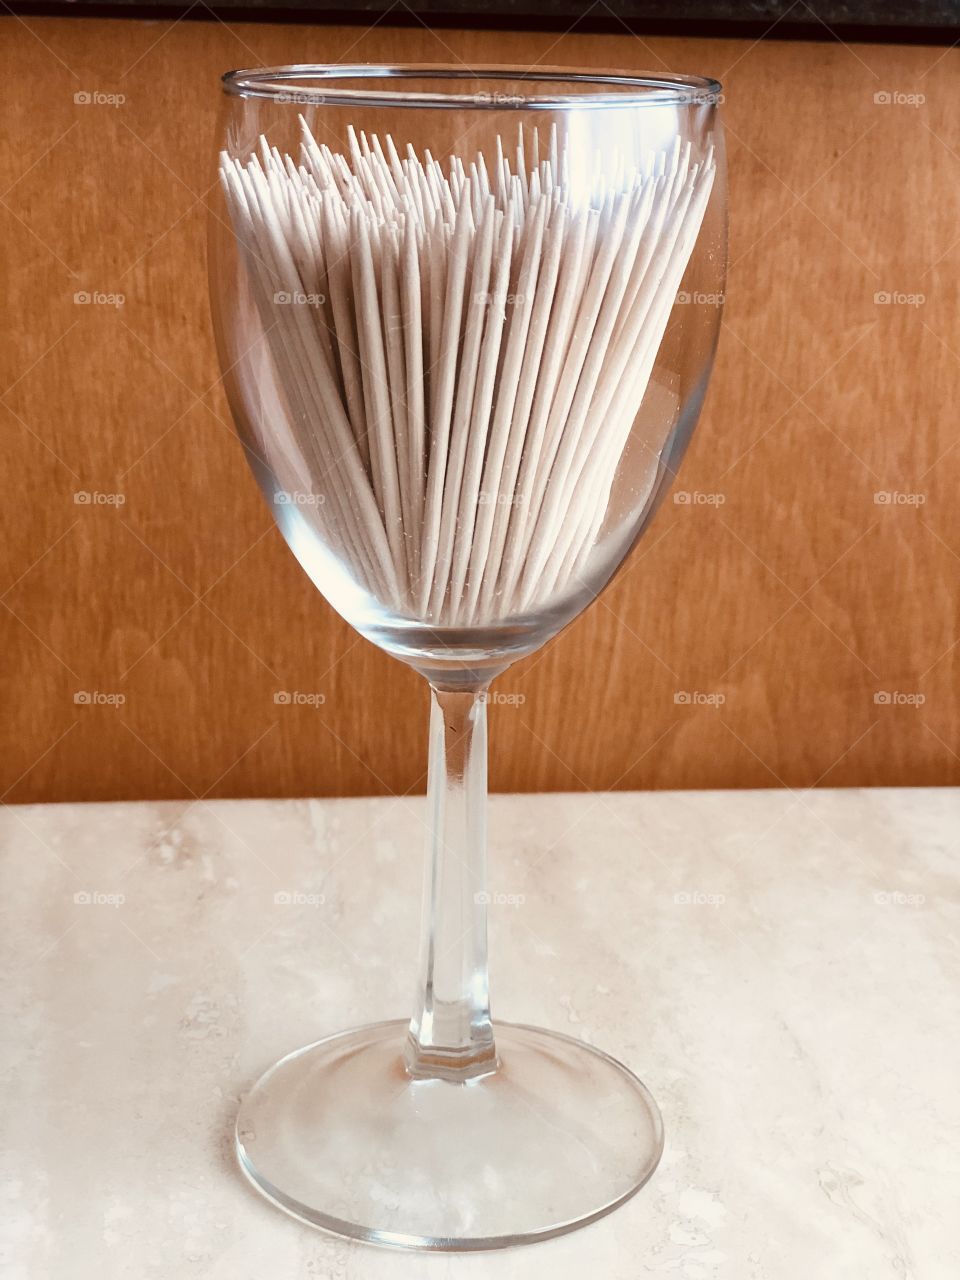 Glass full of toothpicks.